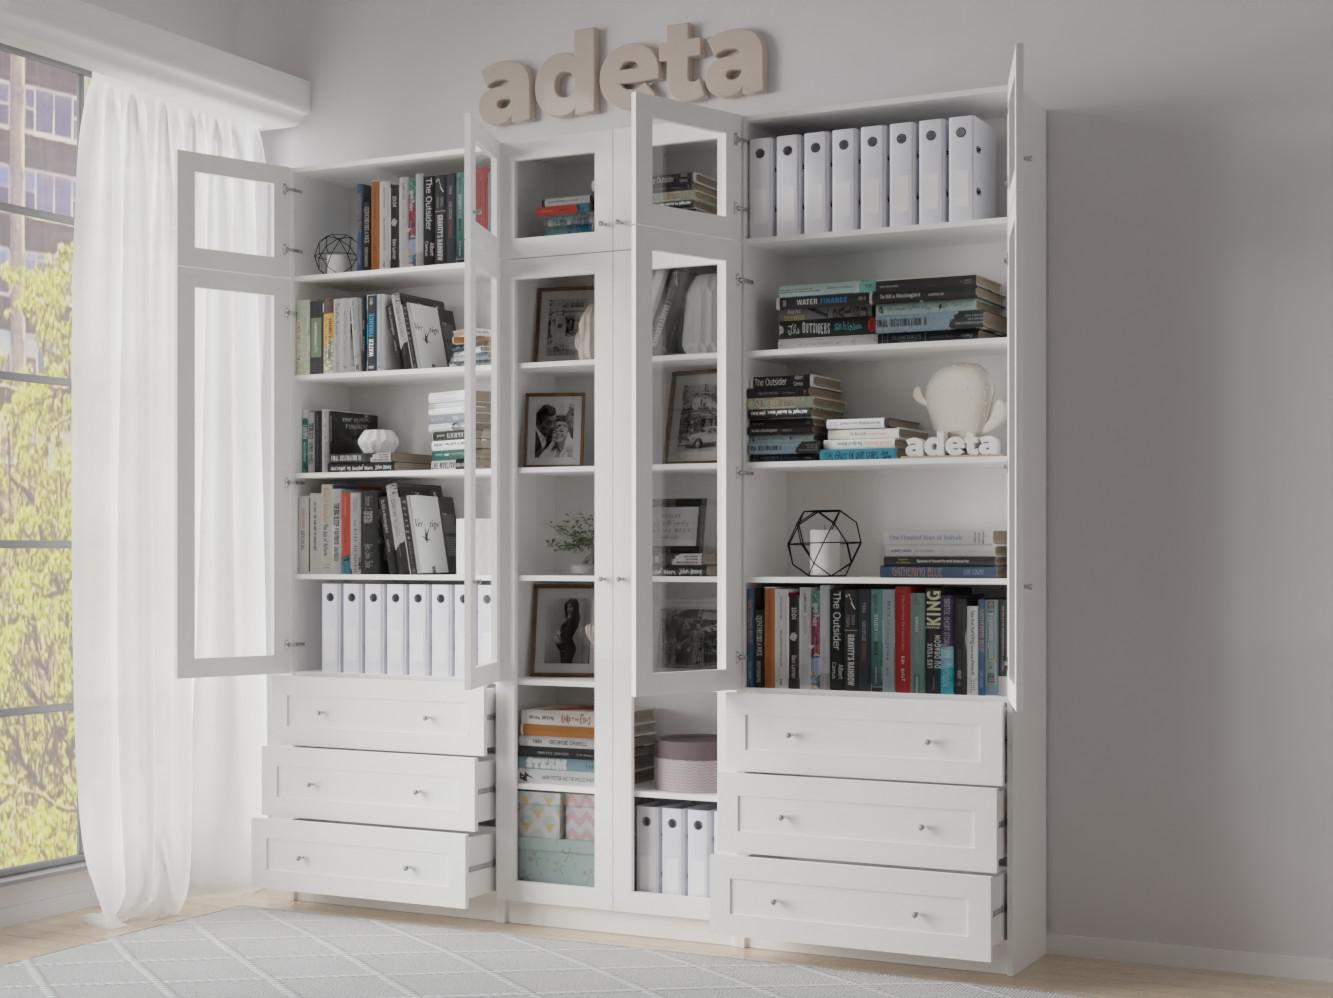 Изображение товара Книжный шкаф Билли 54 white ИКЕА (IKEA), 240x30x237 см на сайте adeta.ru